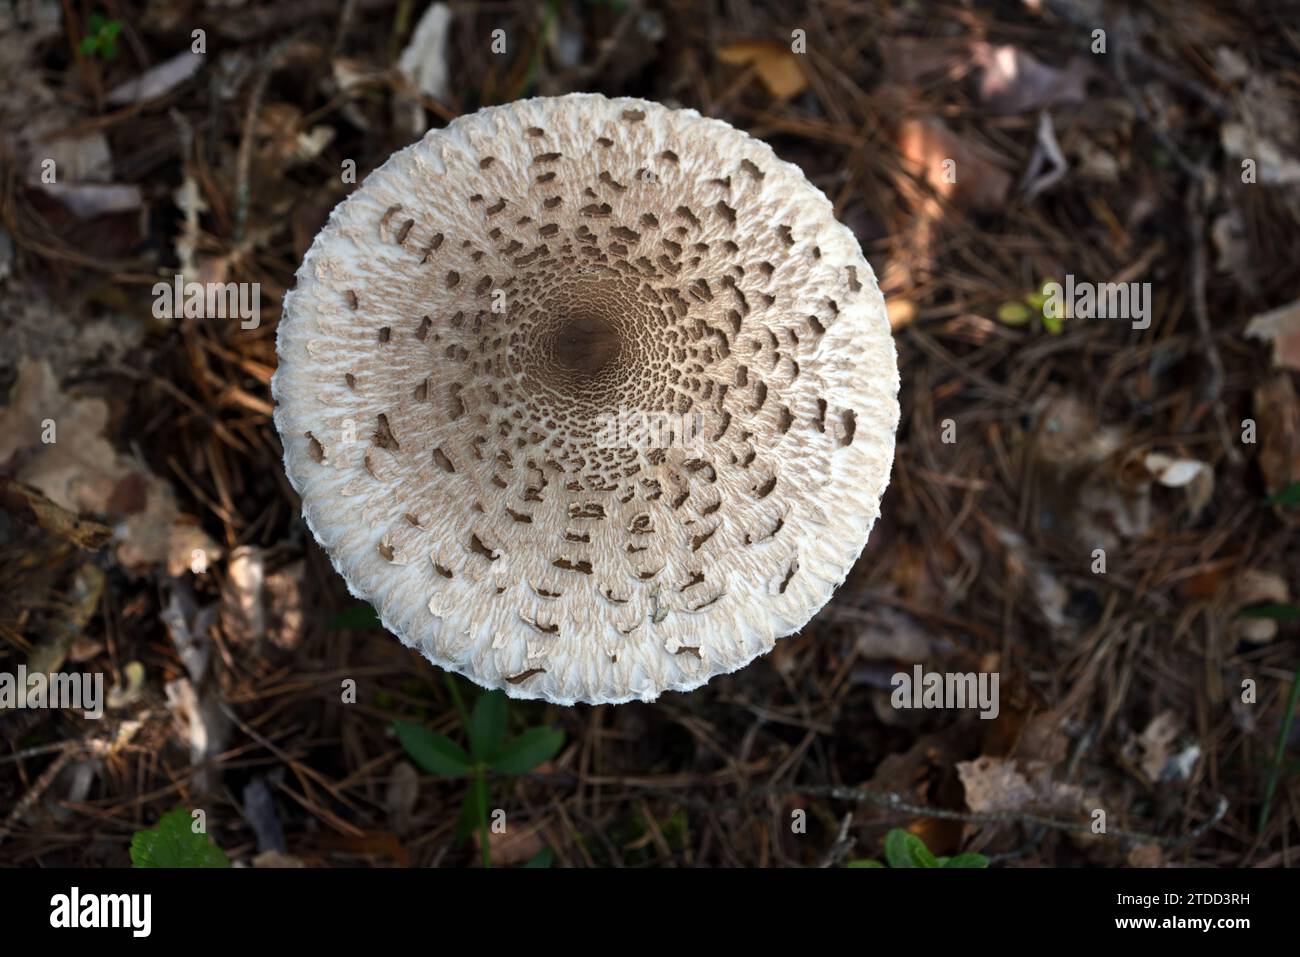 Kreisförmige oder runde Kappe von Parasol Pilhroom, Macrolepiota procera, früher Agricus procerus, wächst auf dem Waldboden Stockfoto